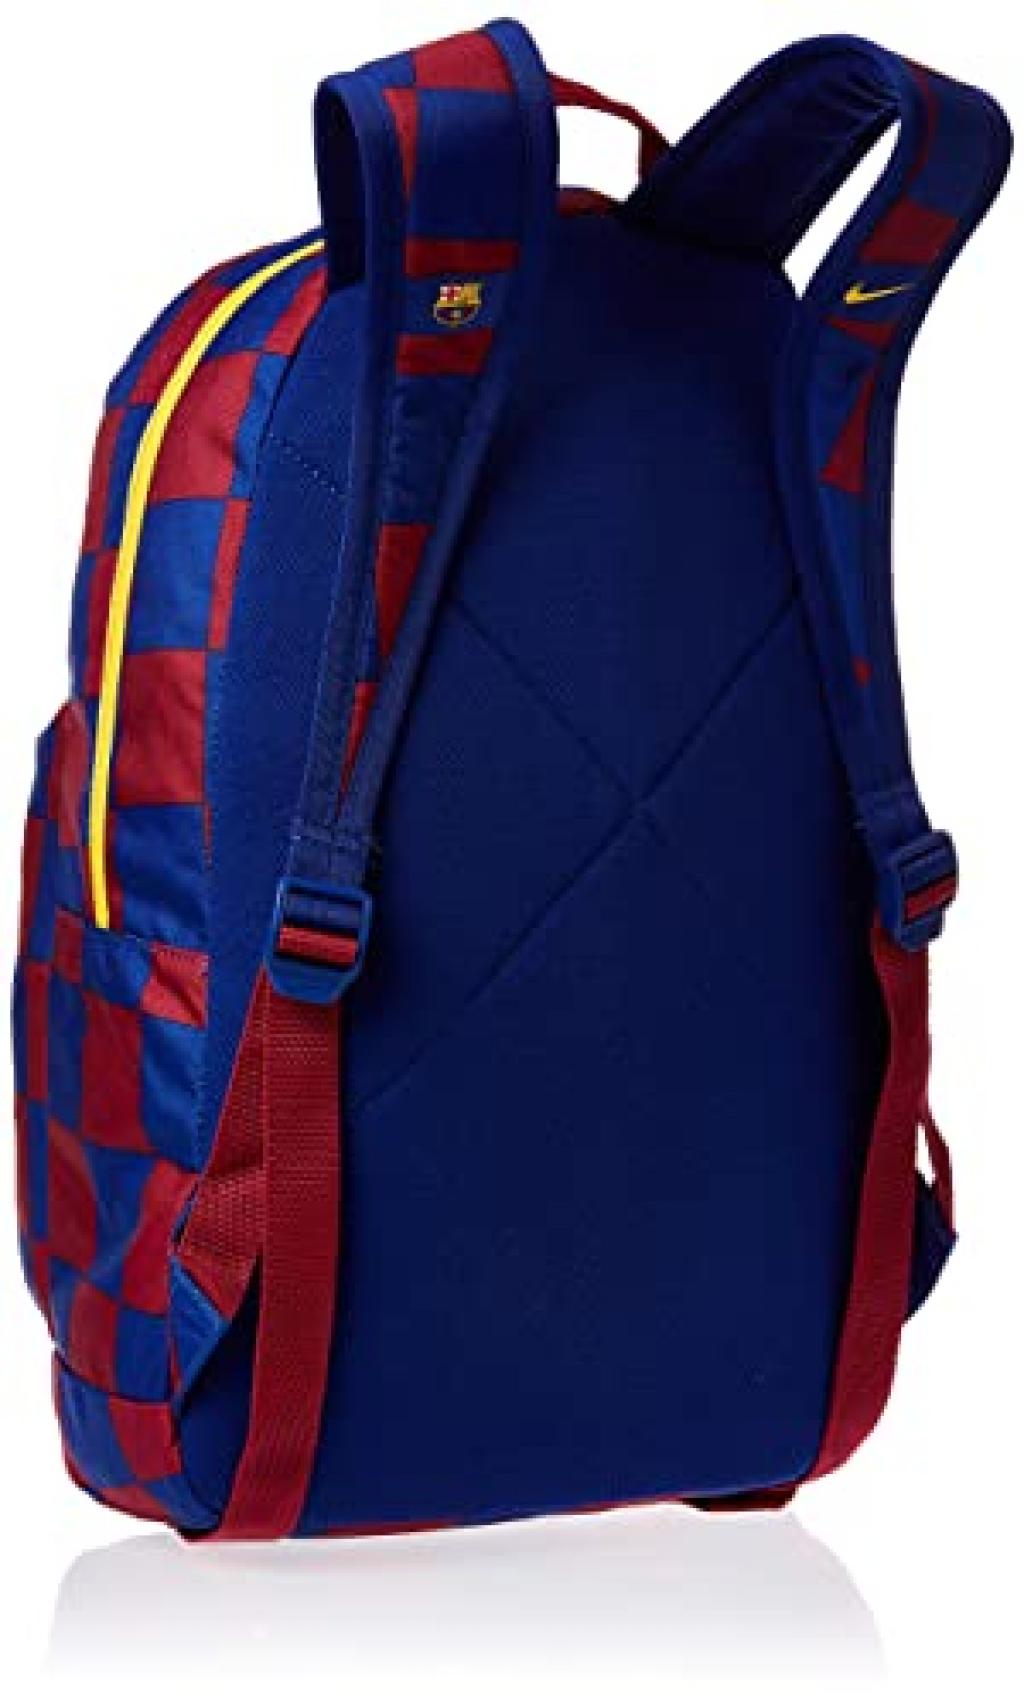 Nike FC Barcelona Backpack/рюкзак